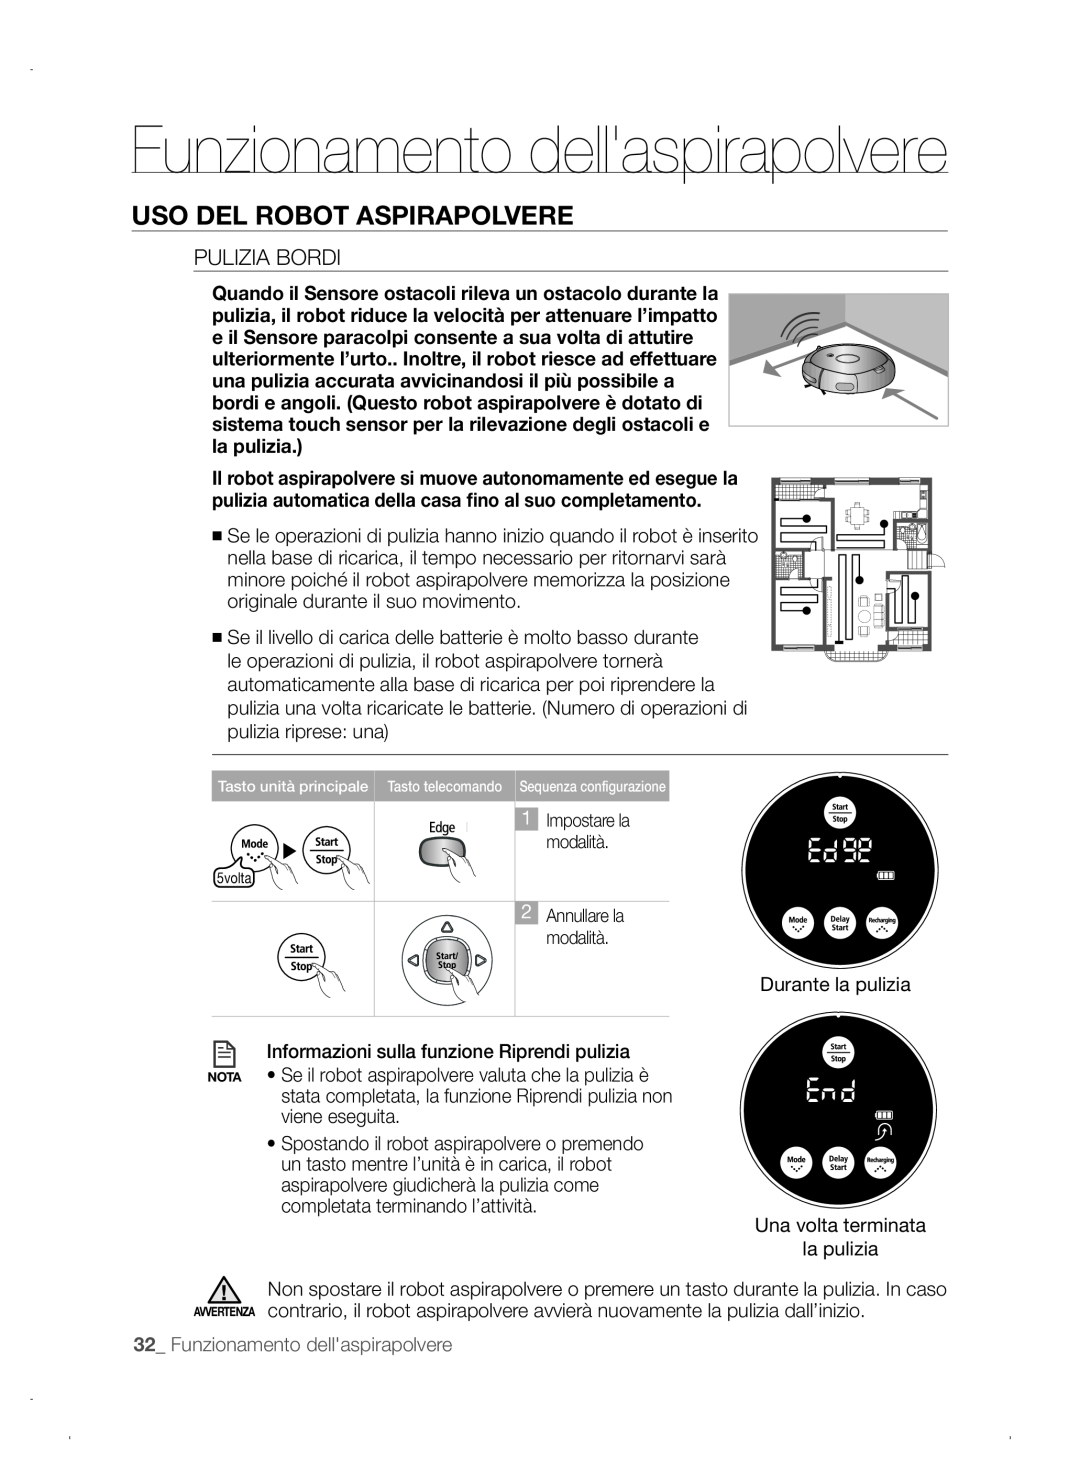 Samsung VCR8845T3A/XEO, VCR8845T3A/XET manual Funzionamento dellaspirapolvere, Uso Del Robot Aspirapolvere, Pulizia bordi 